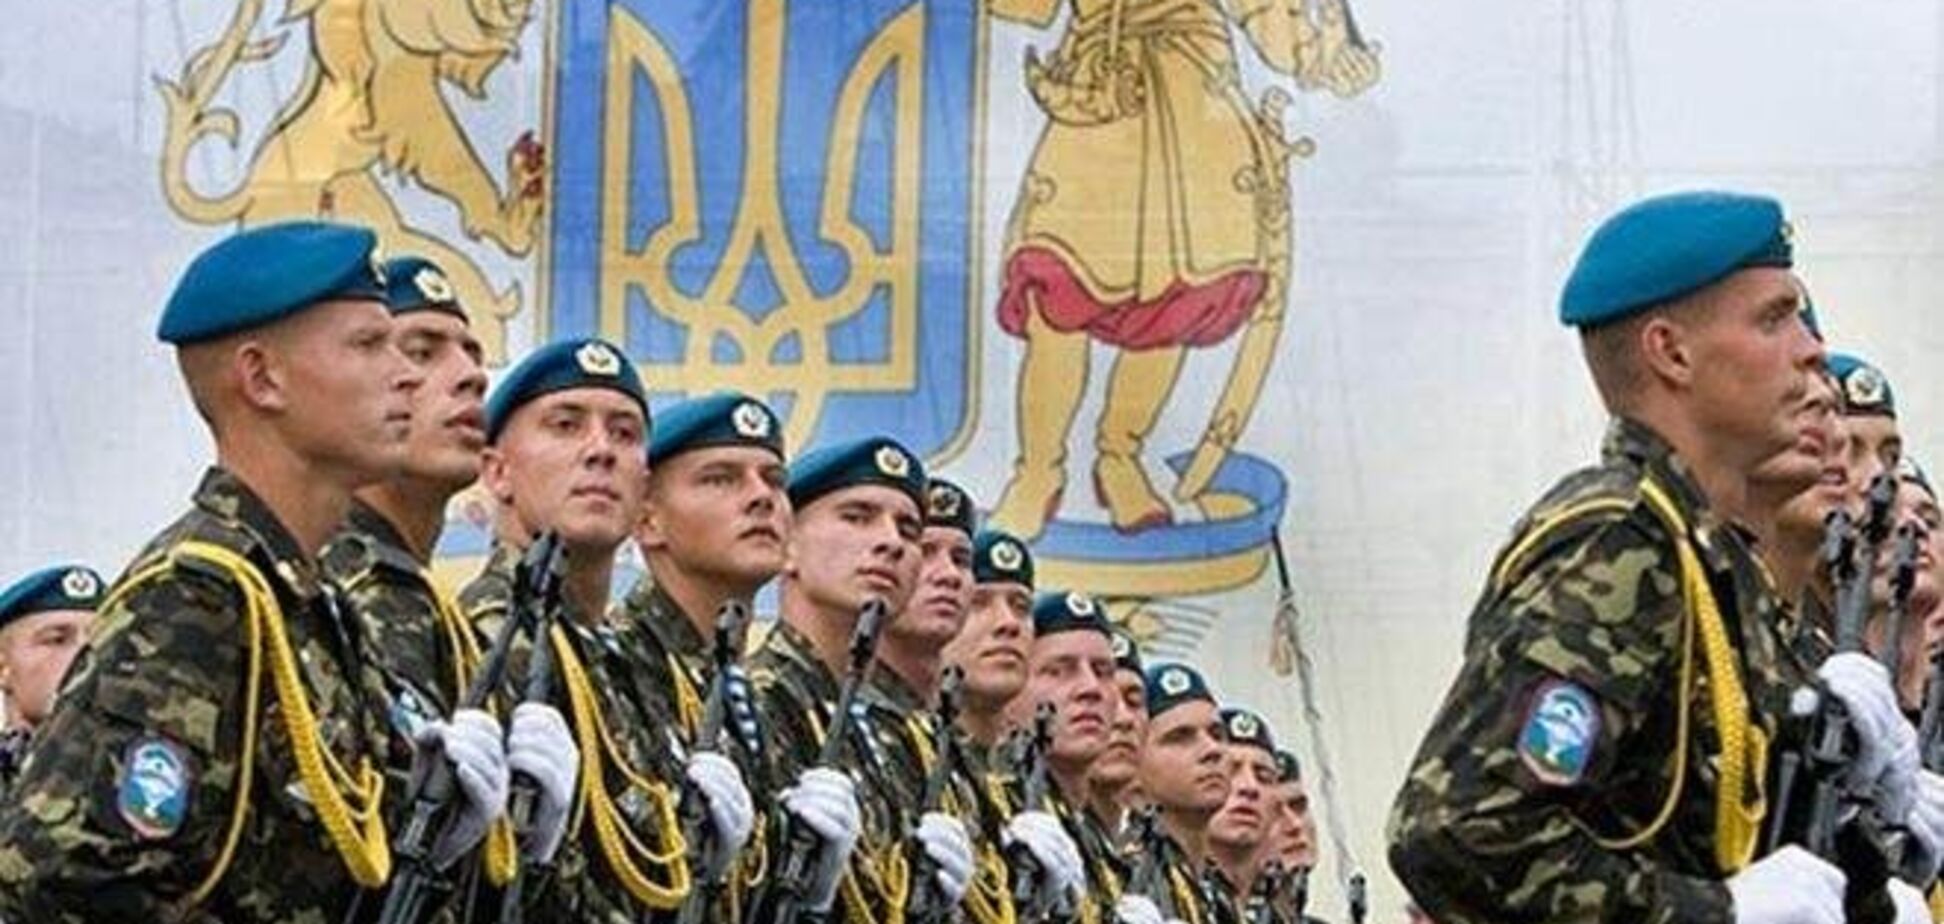 Джемілєв розповів, навіщо Україні потрібен військовий підрозділ із кримчан